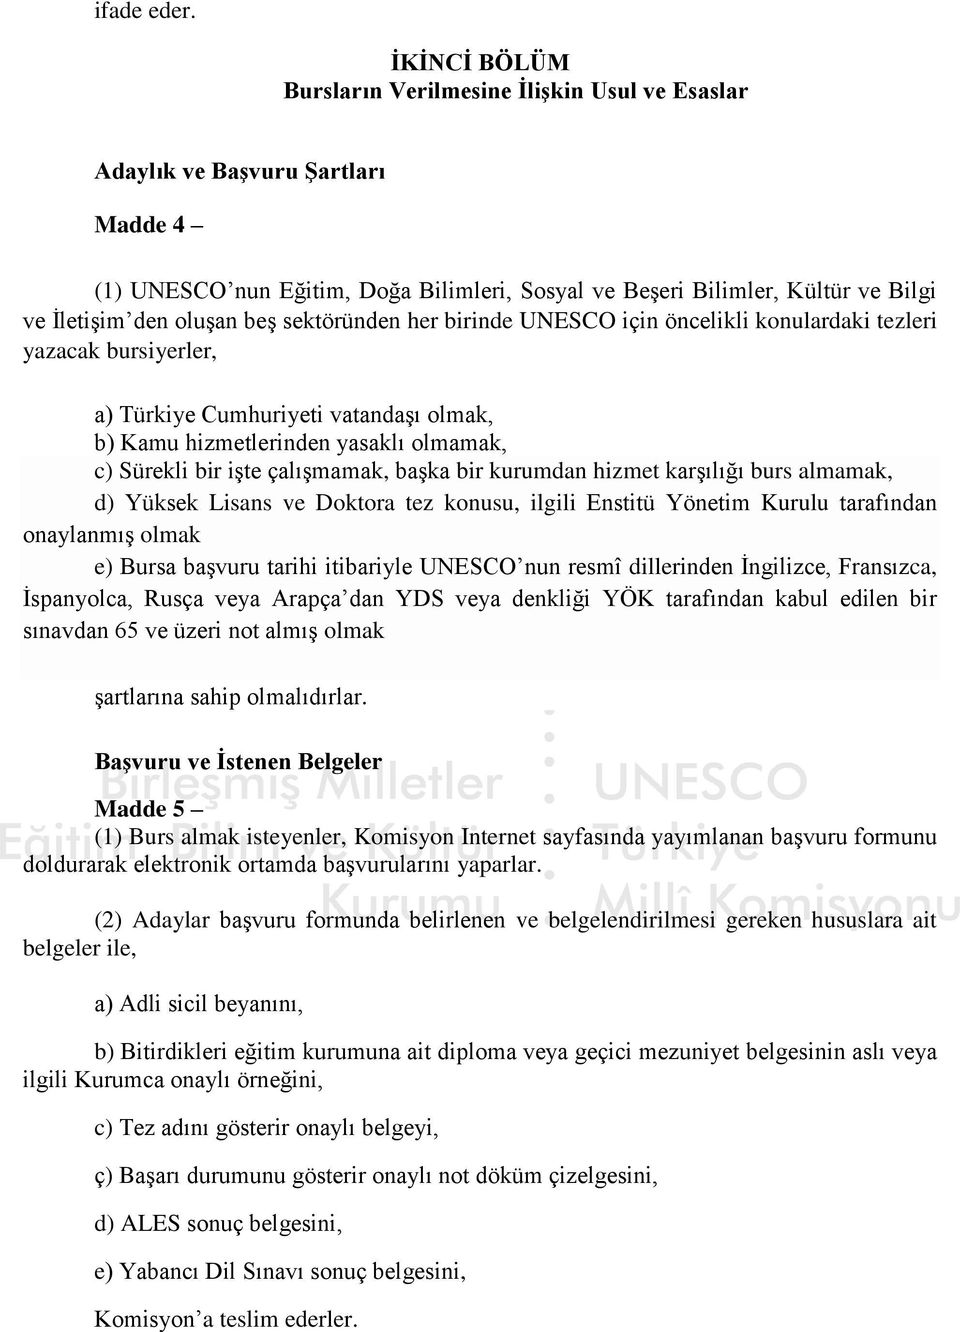 beş sektöründen her birinde UNESCO için öncelikli konulardaki tezleri yazacak bursiyerler, a) Türkiye Cumhuriyeti vatandaşı olmak, b) Kamu hizmetlerinden yasaklı olmamak, c) Sürekli bir işte